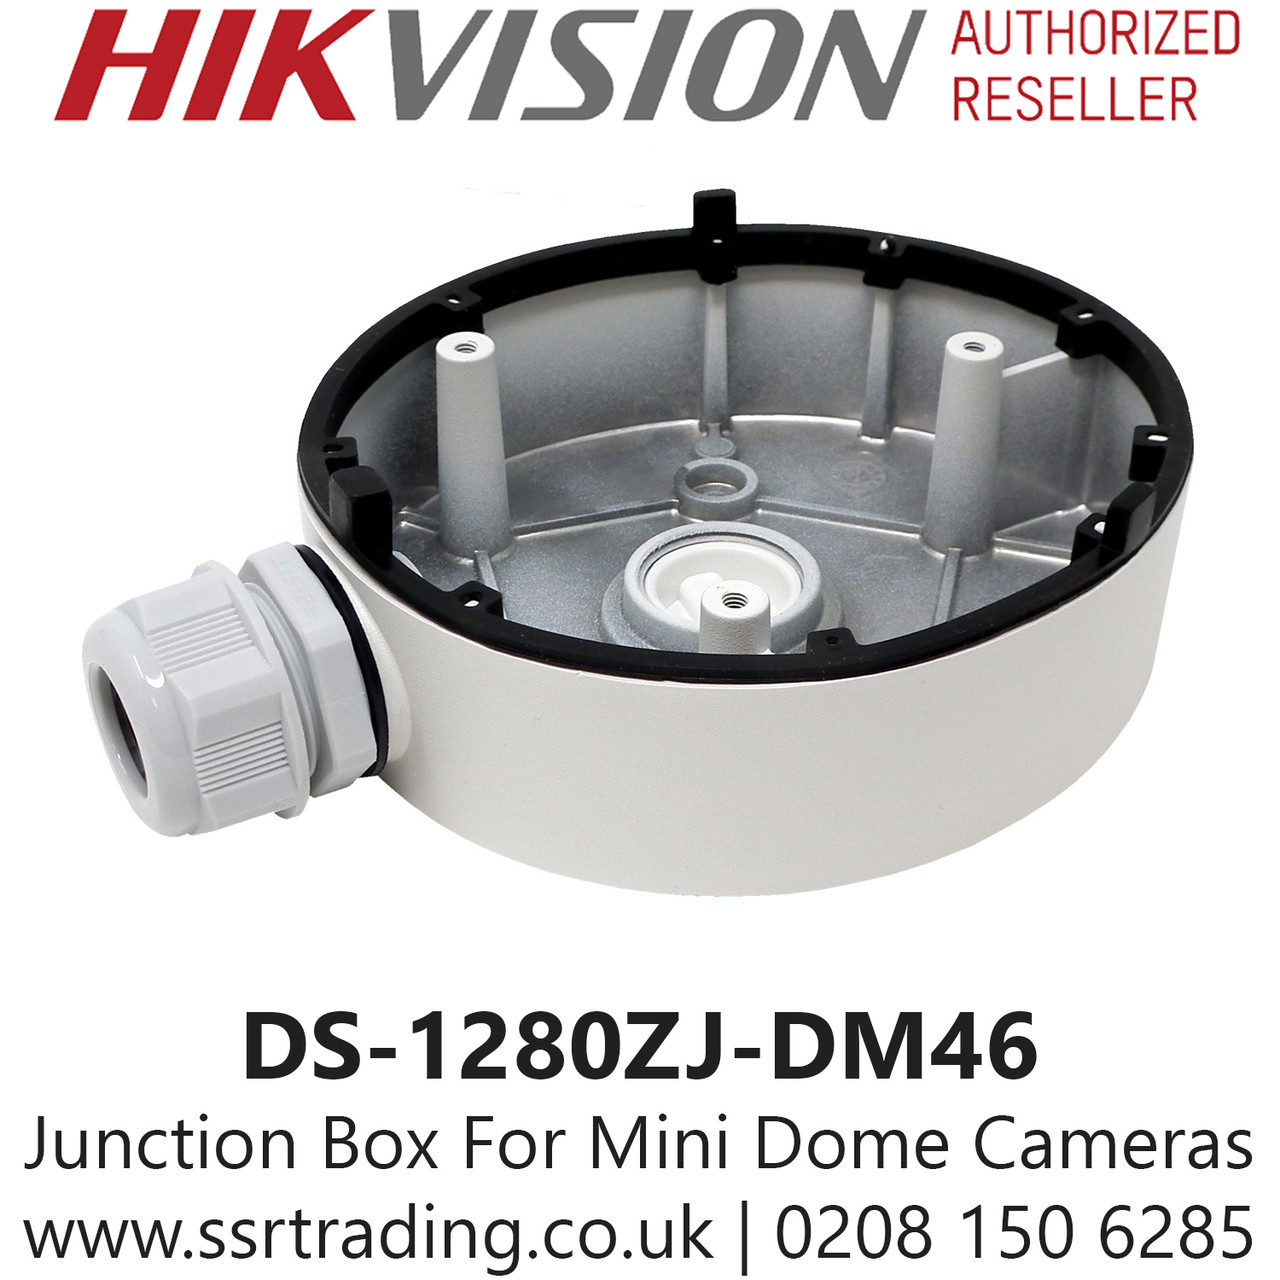 Hikvision HIK Vision DS-1280ZJ-DM46 Junction Box Mount for Camera 